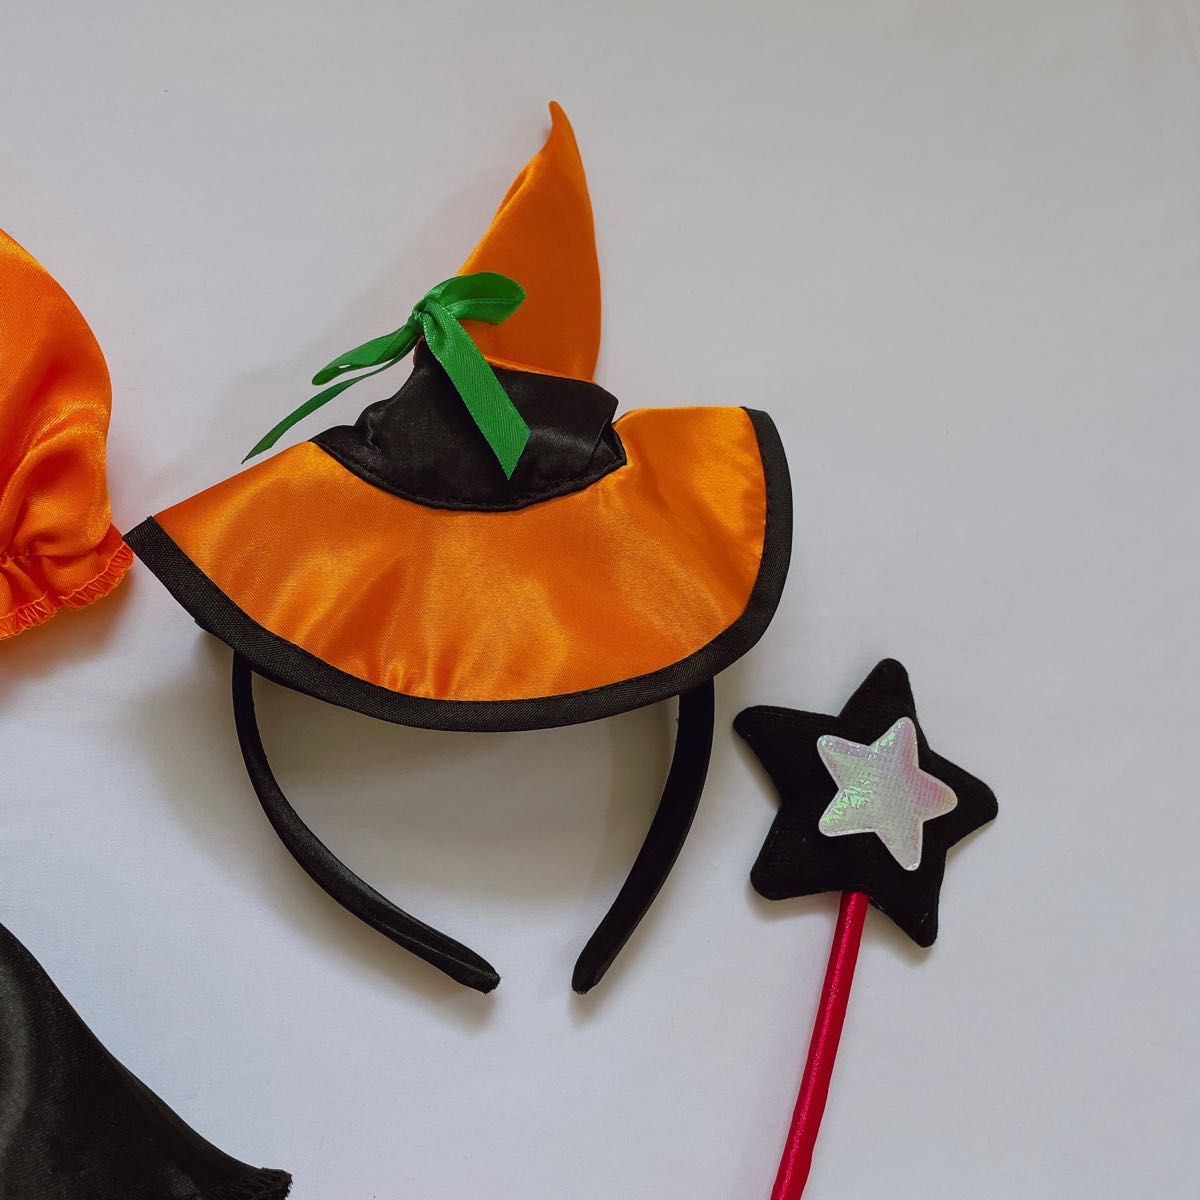 ハロウィン コスプレ 子供 110 魔女 ドレス 帽子 ステッキ セット 女の子 ハロウィンコスチューム 魔法使い 仮装 衣装 